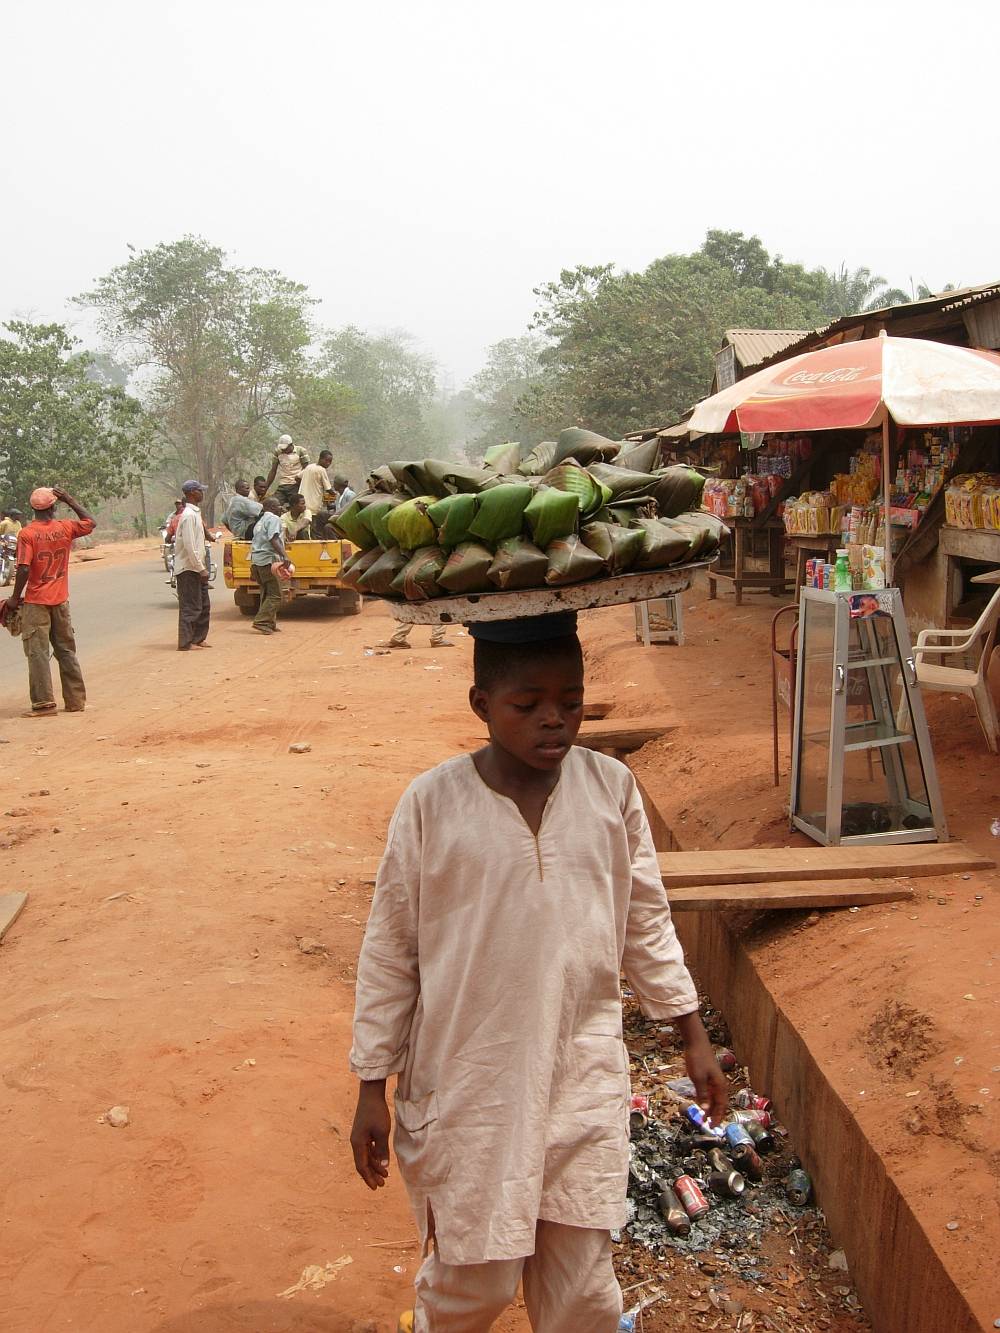 Patenschaft - Slider - Afrikanischer Junge - Marktplatz - Afrika - NIgeria